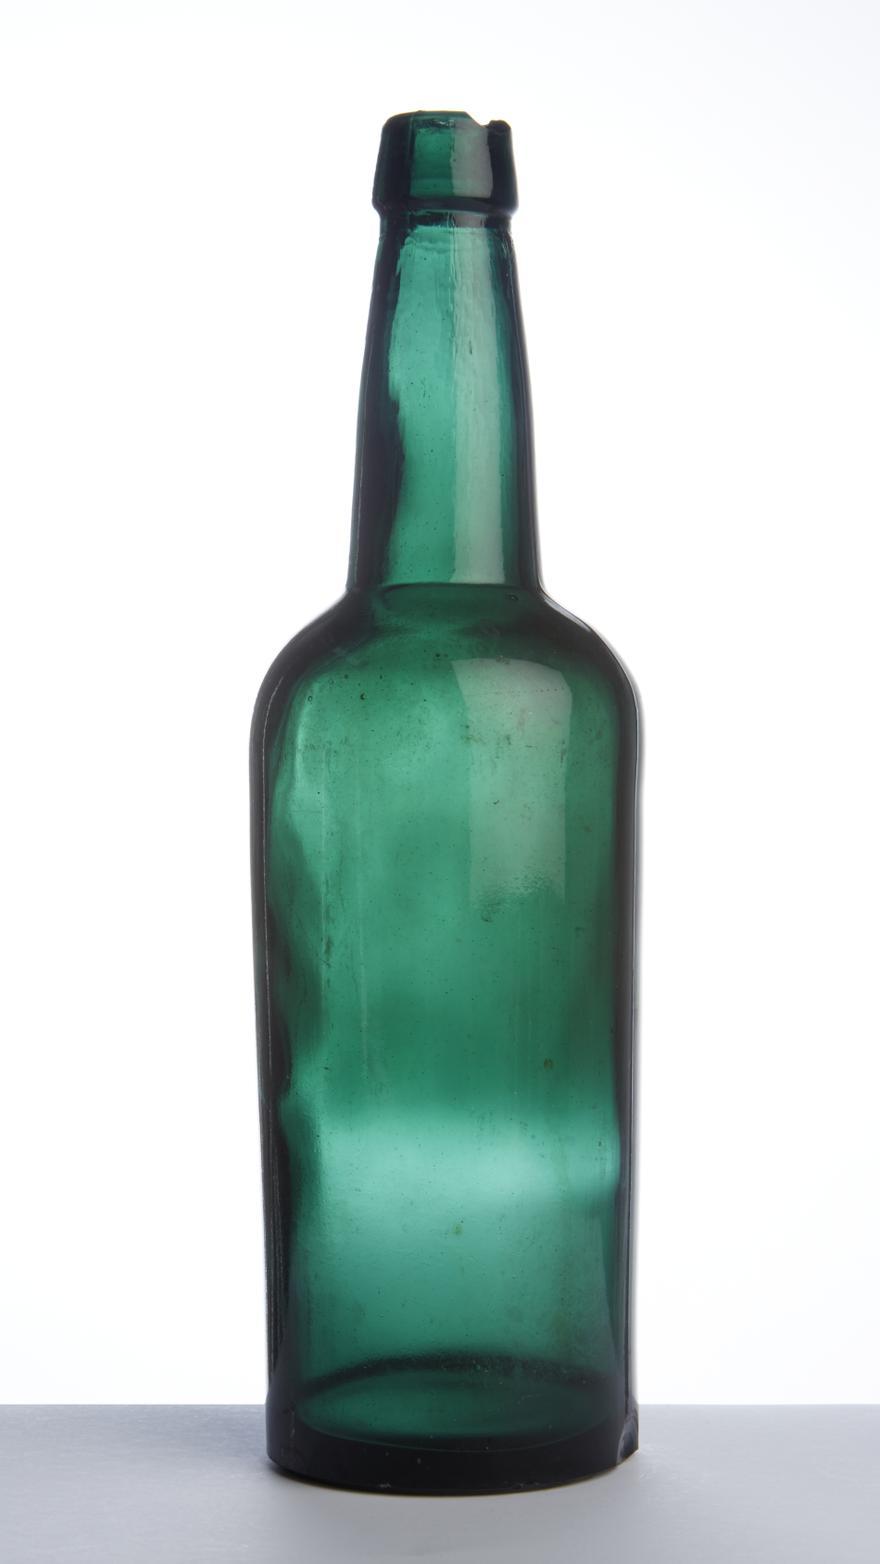 Botella de sidra de la F�brica de vidrios La Industria de Gijon Xix�n.jpg